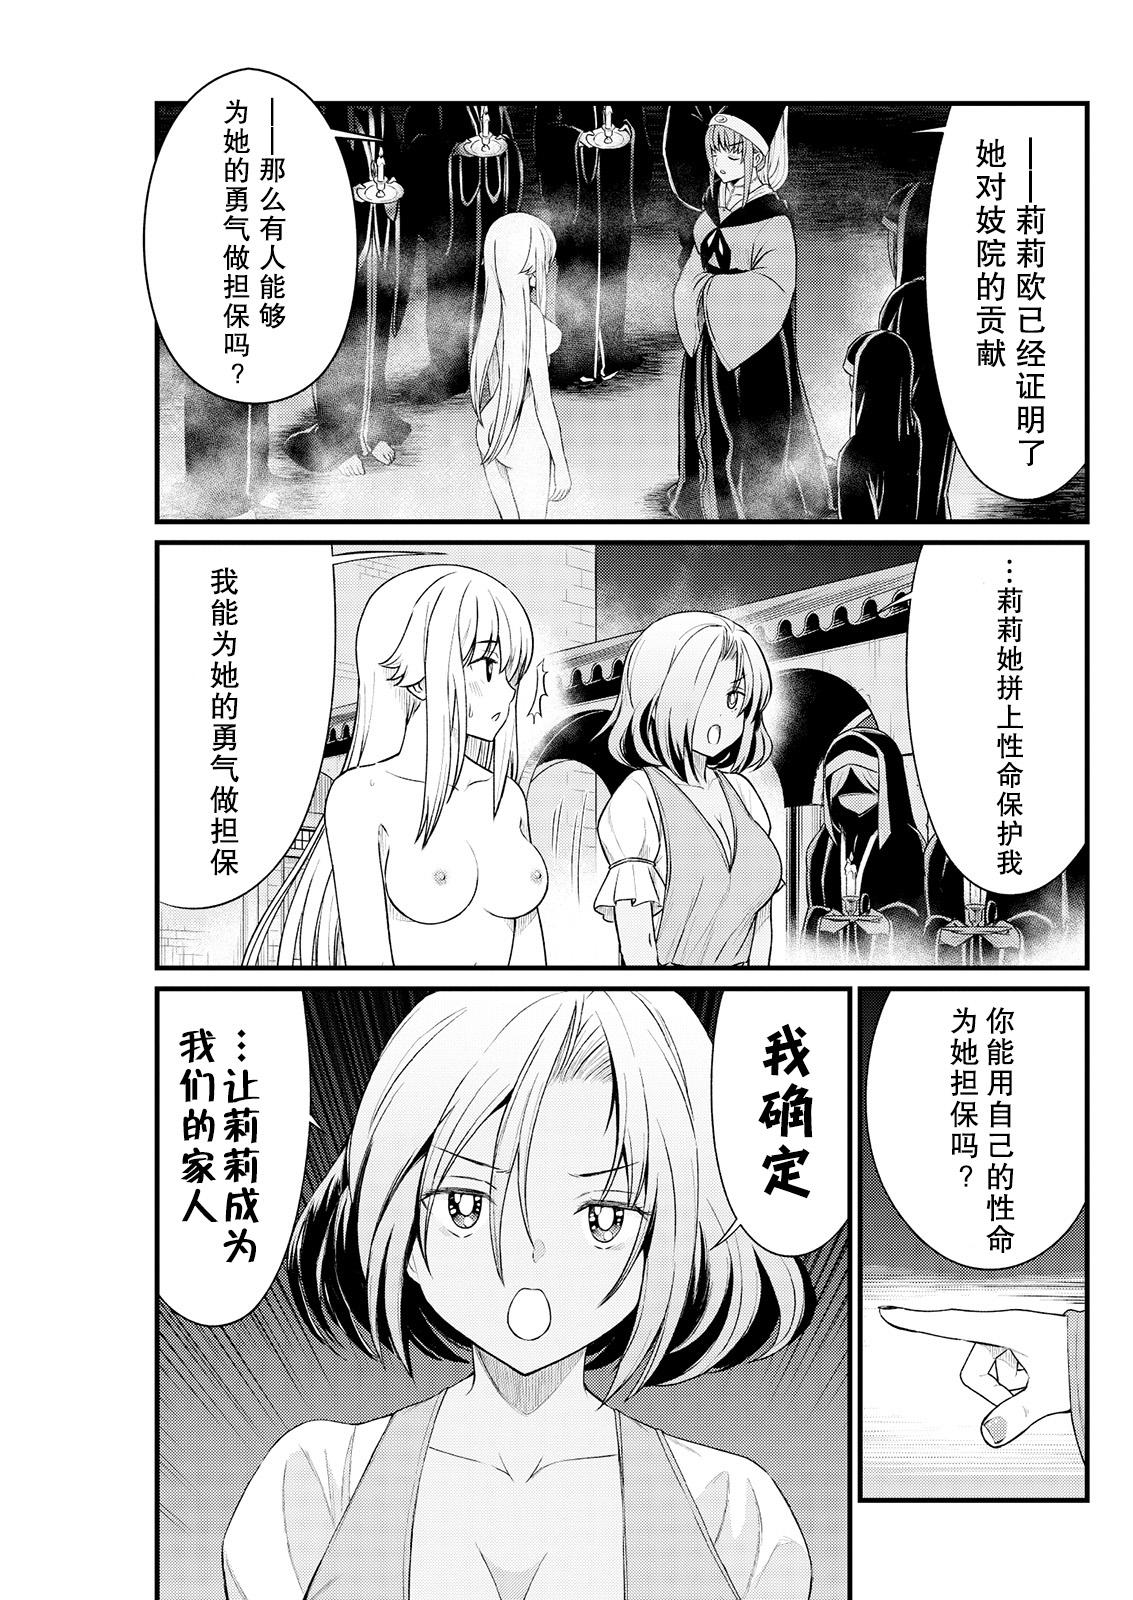 Piss Kukkorose no Himekishi to nari, Yuri Shoukan de Hataraku koto ni Narimashita. 7 Gayhardcore - Page 7